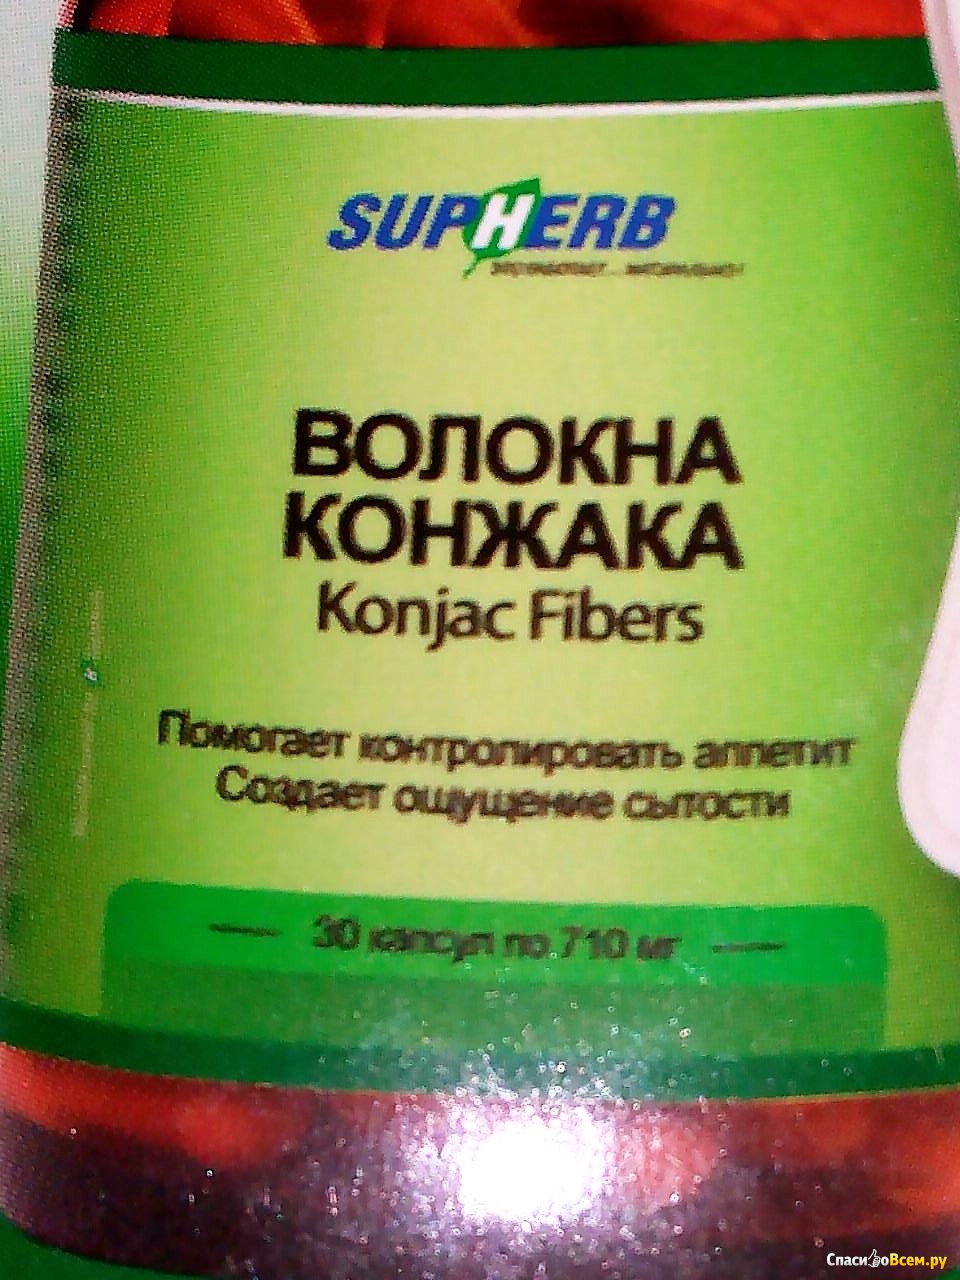 Отзыв про Волокна Конжака для поддержания веса Supherb: 